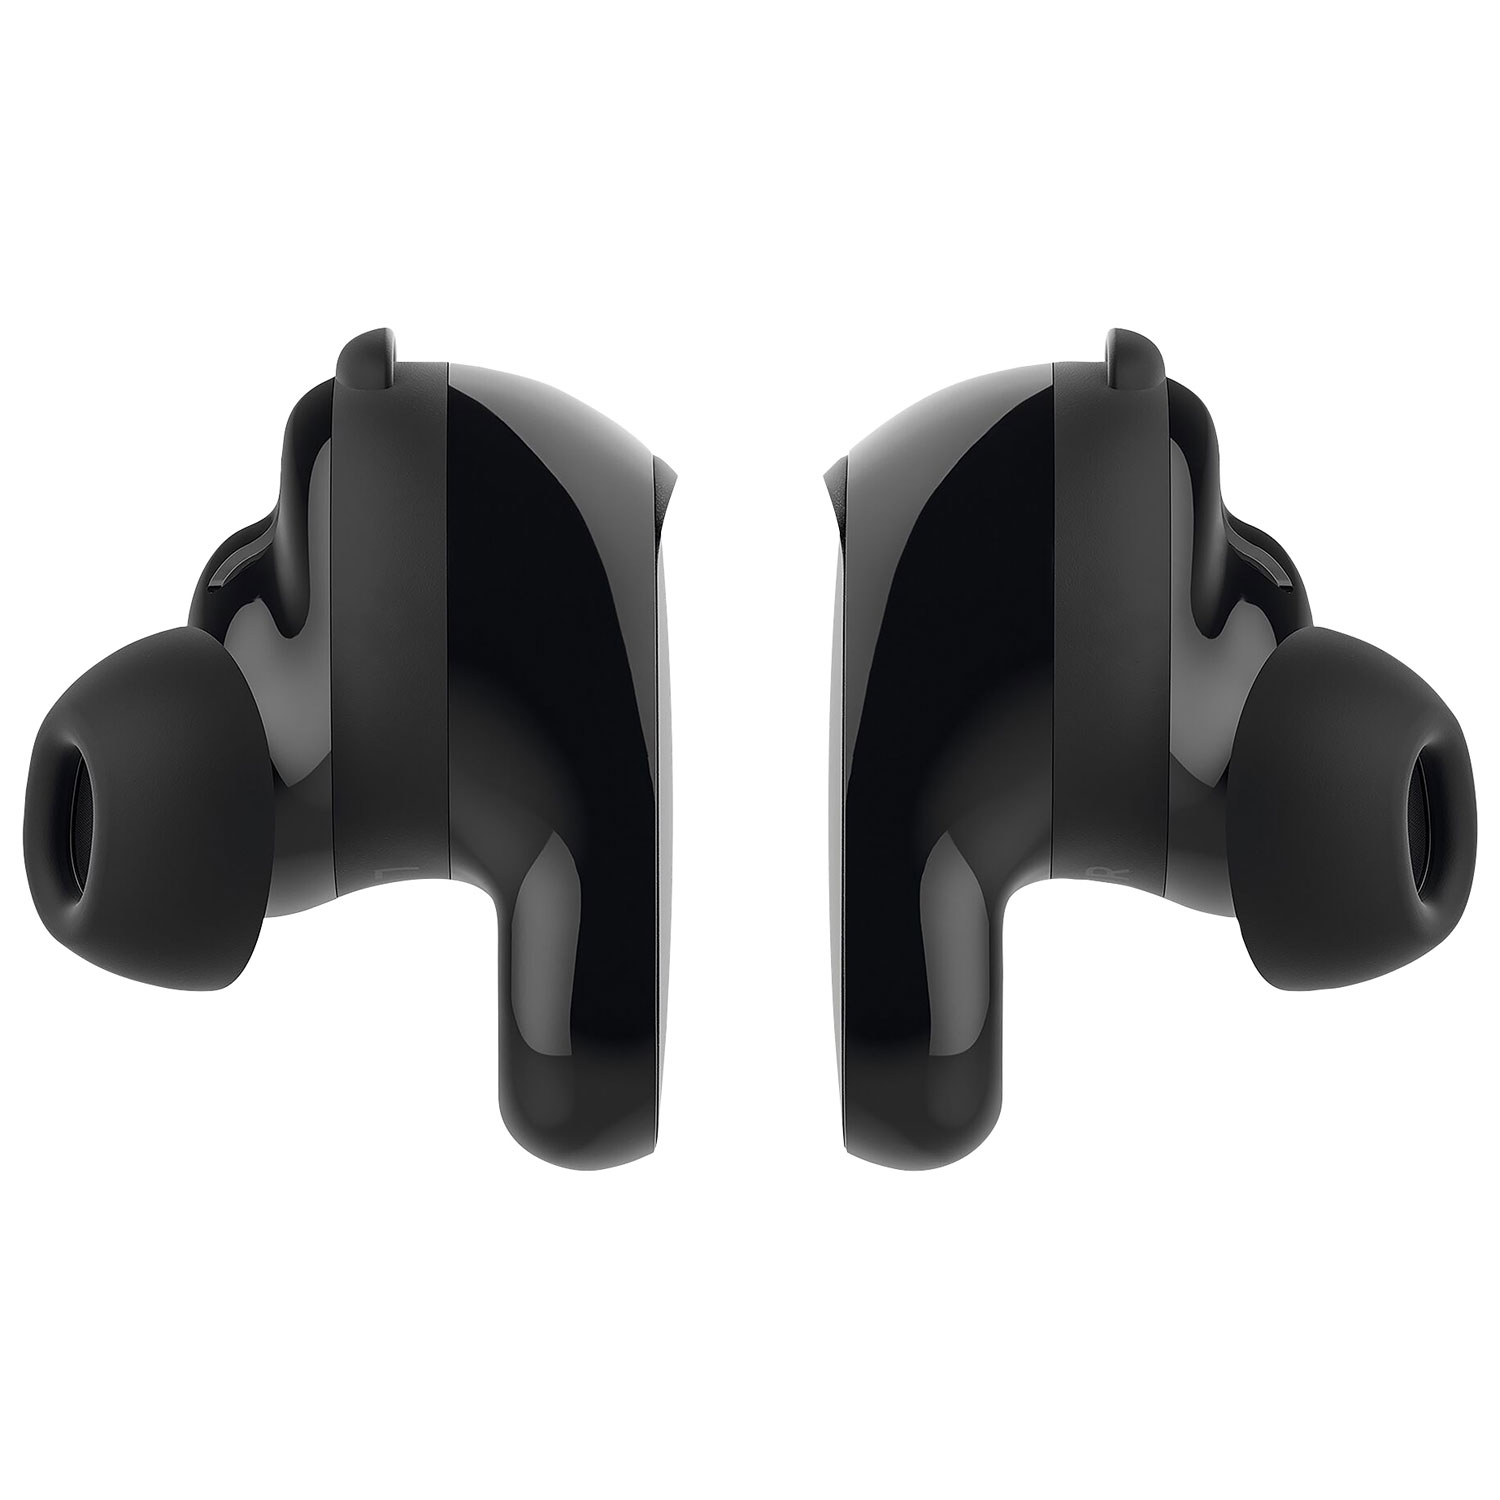 Bose QuietComfort Earbuds II In-Ear Noise Cancelling True